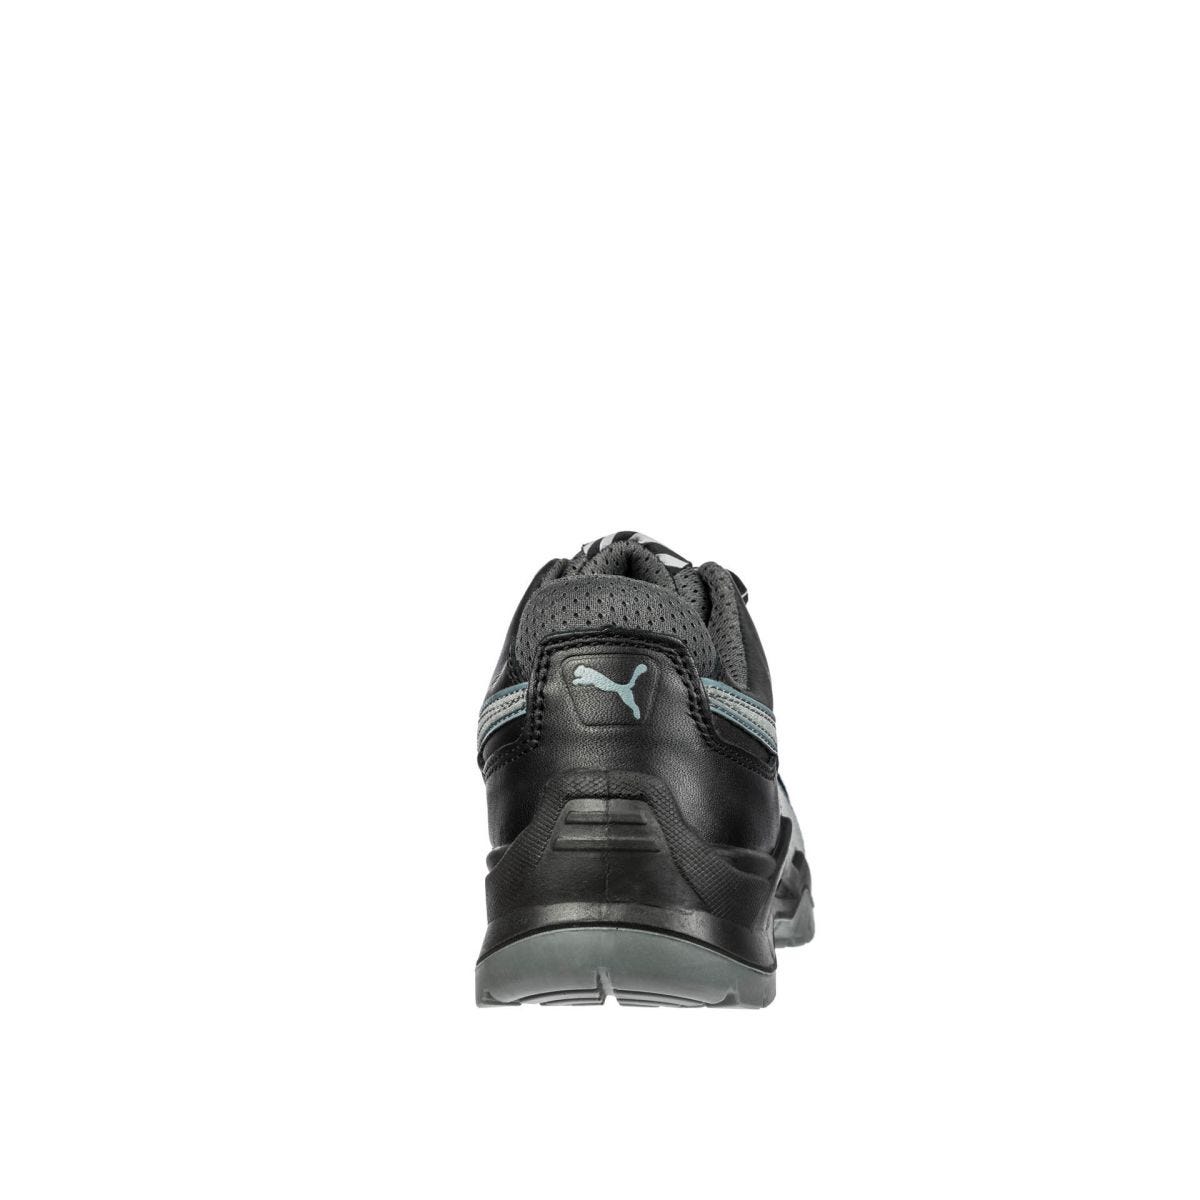 Chaussures de sécurité Argon RX low S3 ESD SRC noir - Puma - Taille 41 1